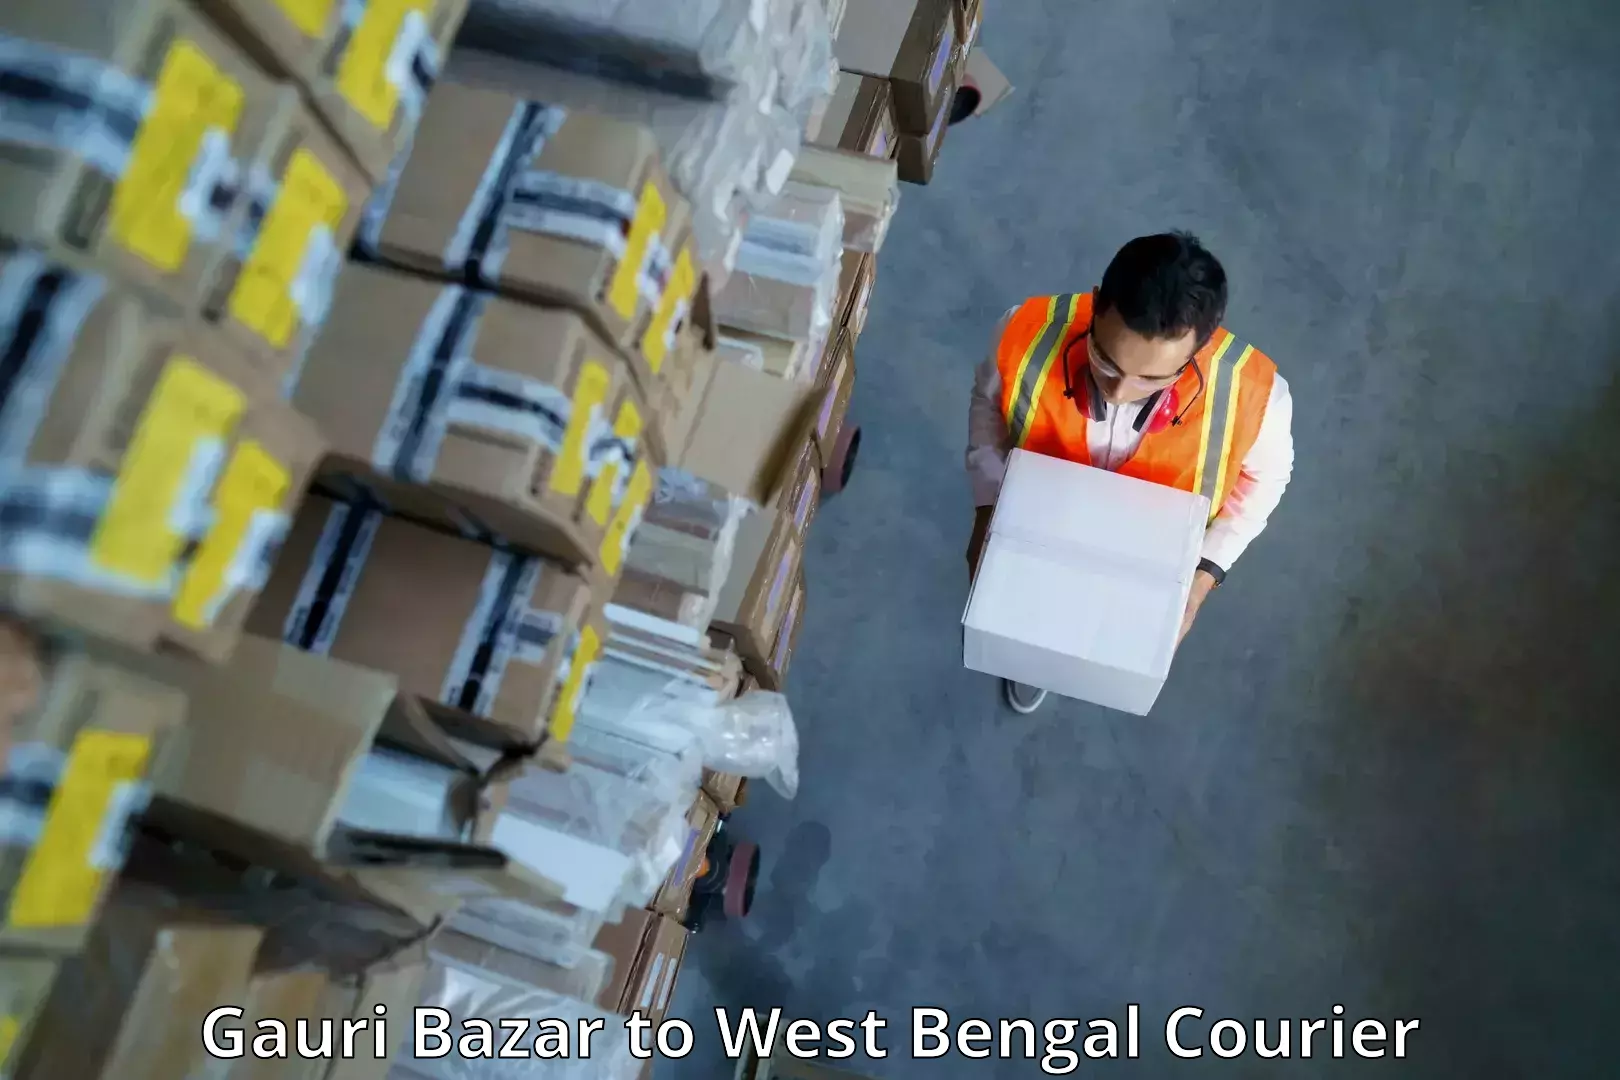 Urban courier service Gauri Bazar to Gourbathan